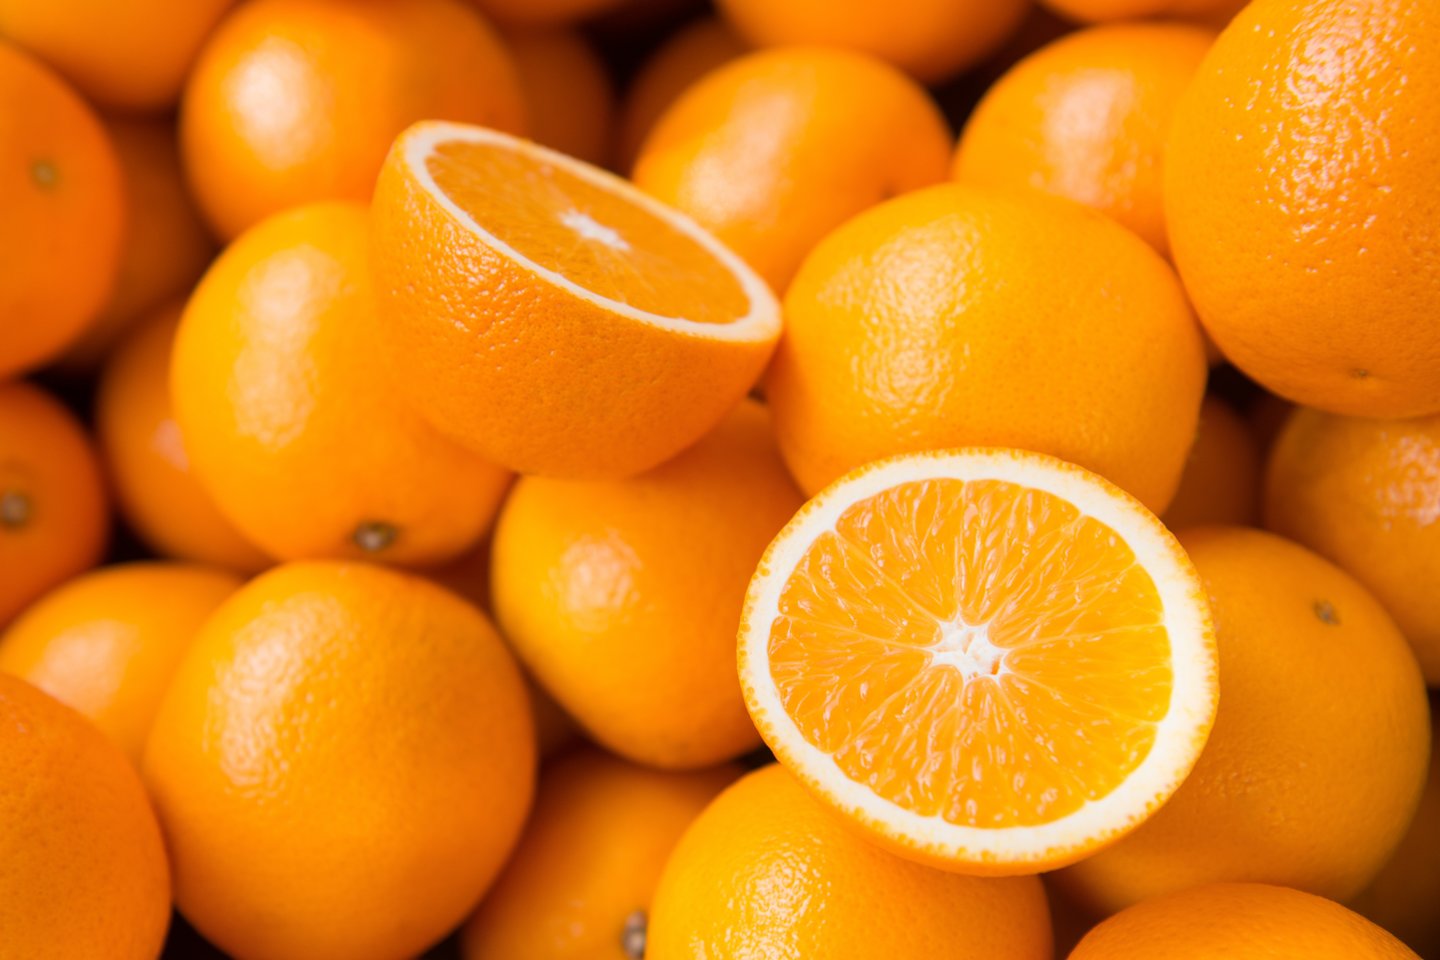 Viename apelsine yra vienos dienos vitamino C dozė.<br>123rf nuotr.